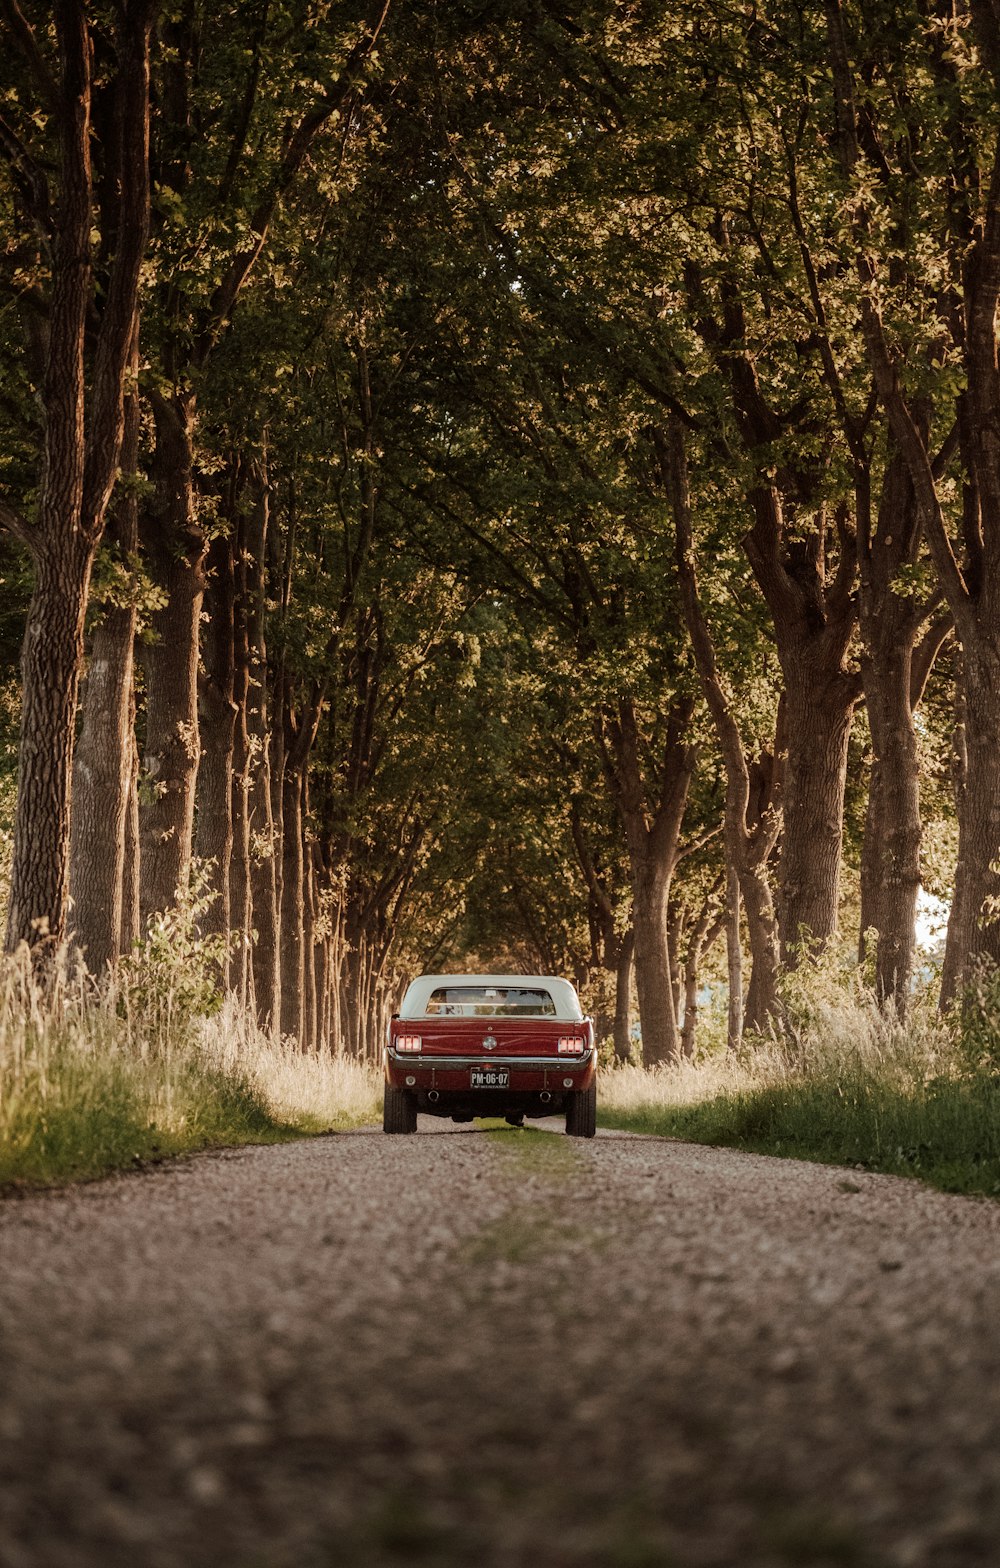 나무로 둘러싸인 도로의 빨간 차